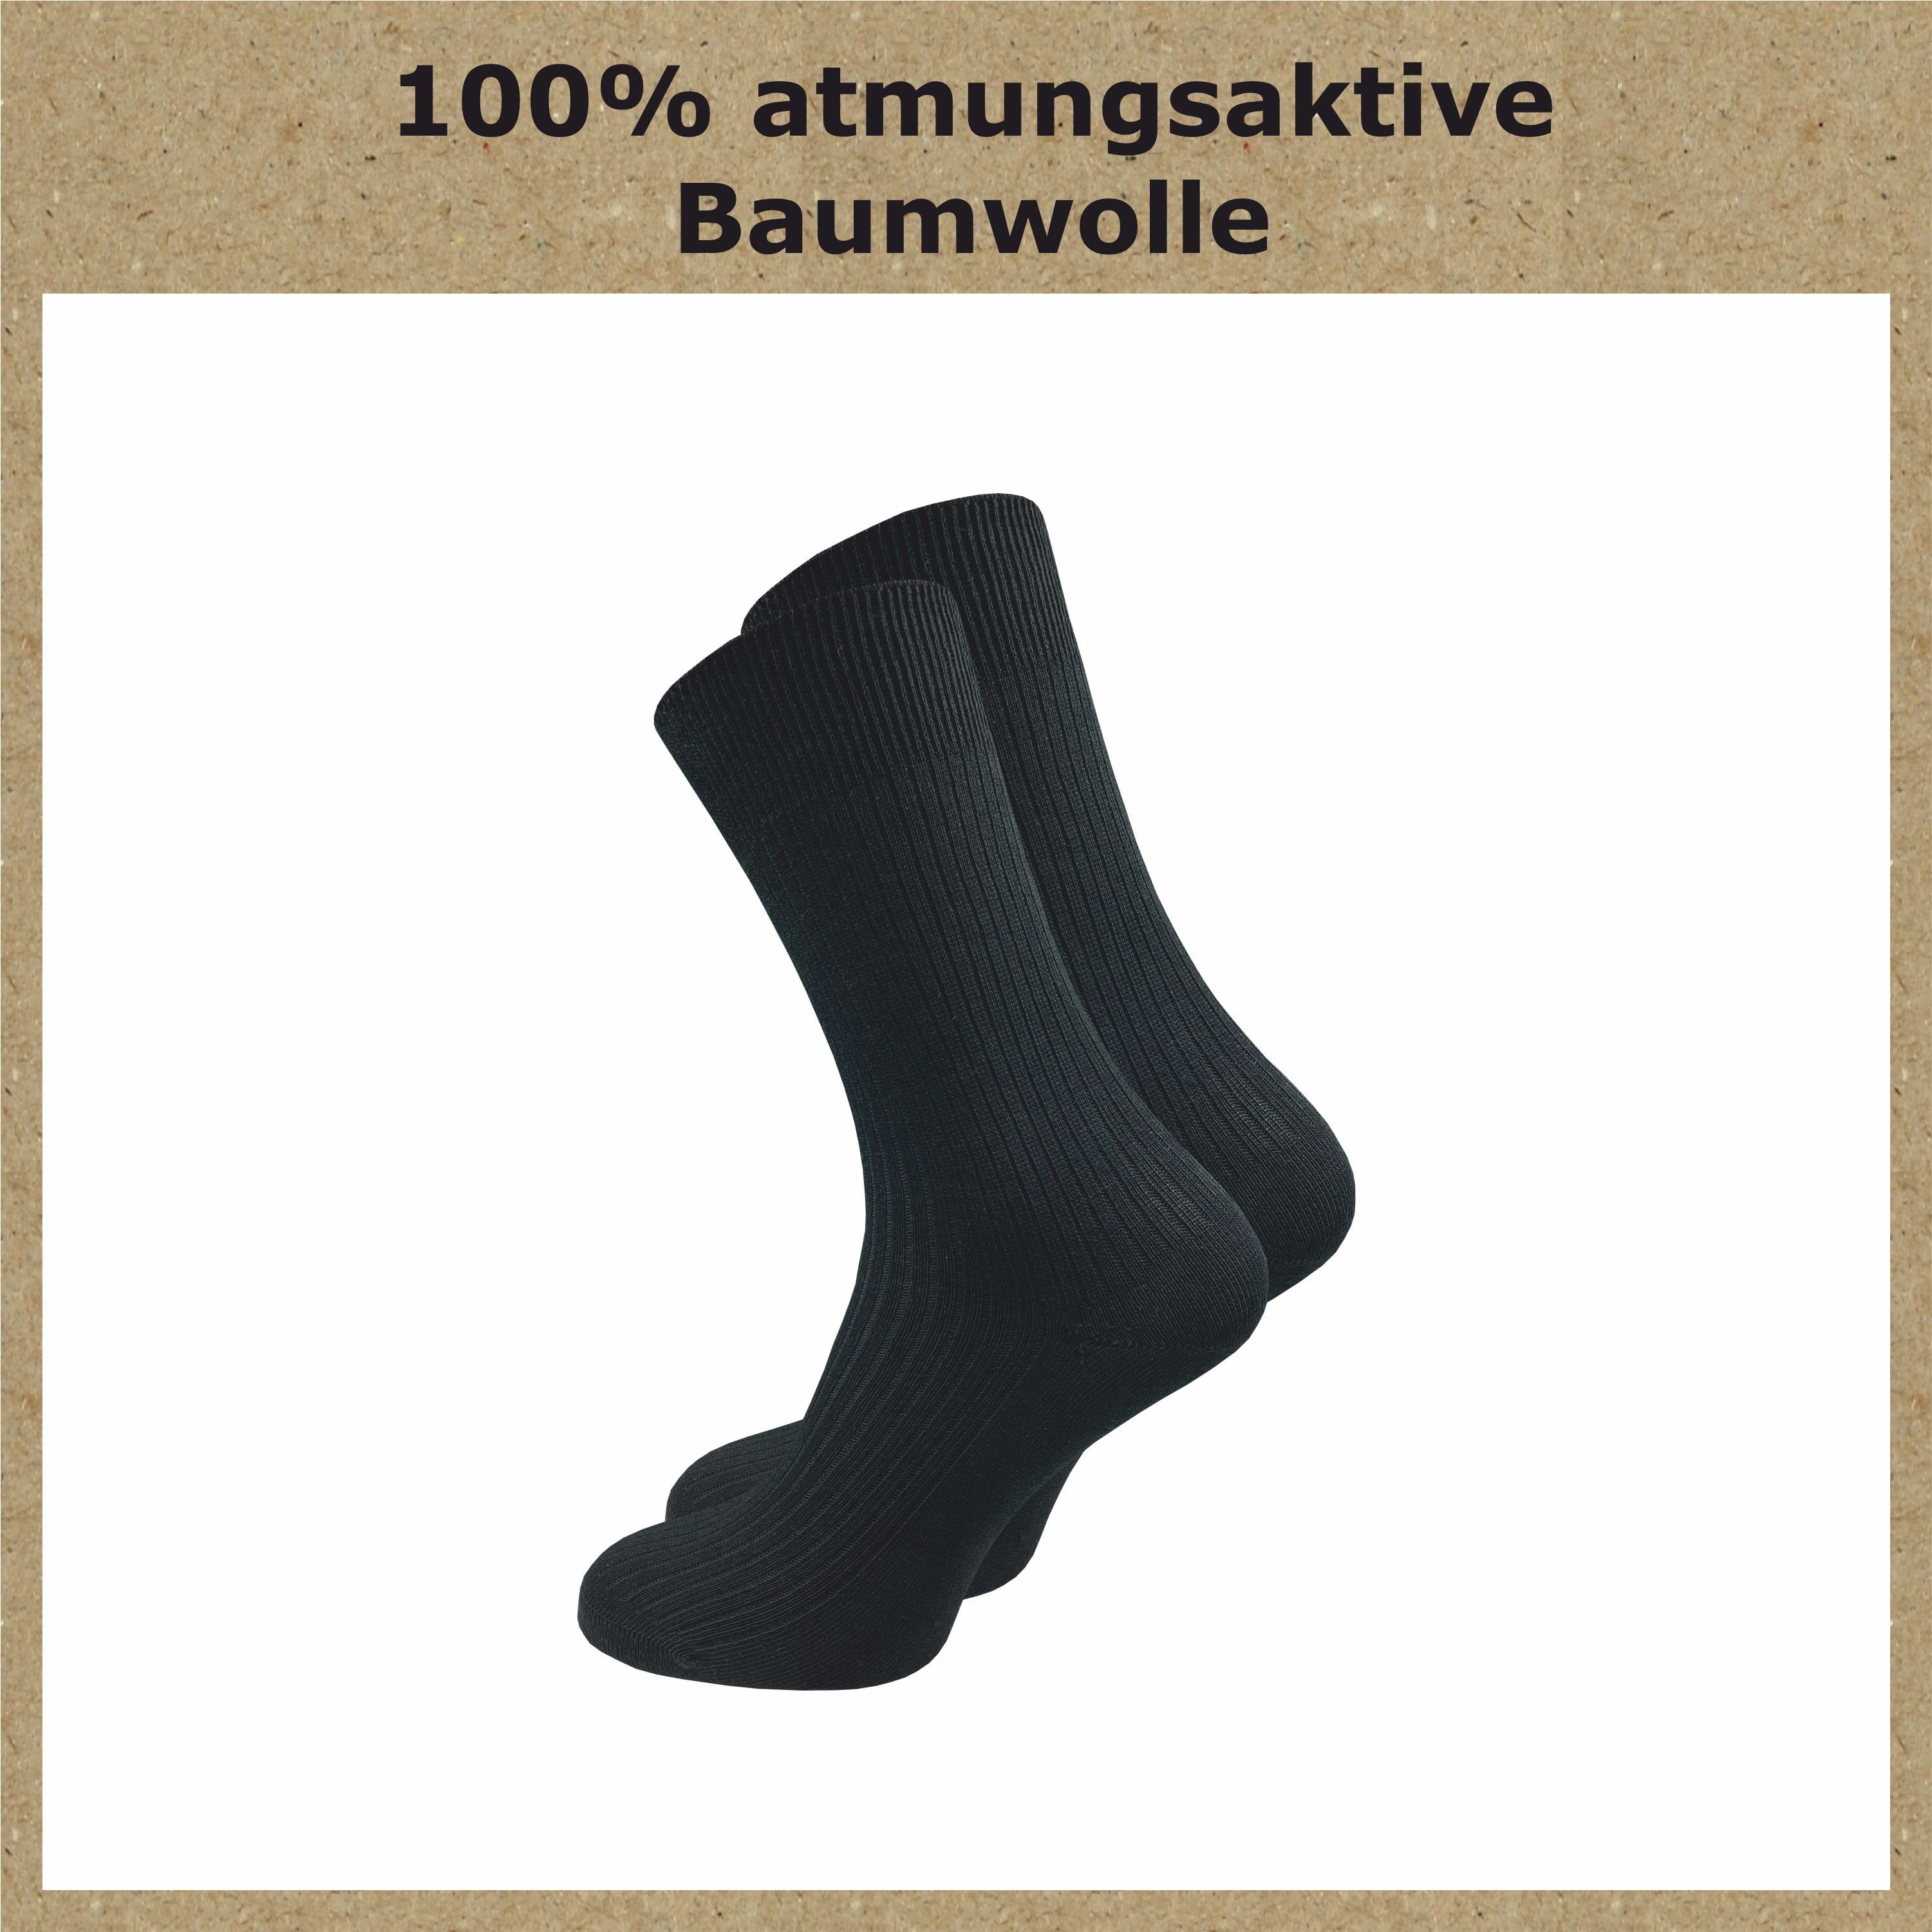 schwarz, Baumwolle stabilisierender für reine Herren (10 aus "Natur" gegen Baumwollsocken Rippe GAWILO Basicsocken Schweißfüße 100% mit in - Baumwolle Paar) Atmungsaktive